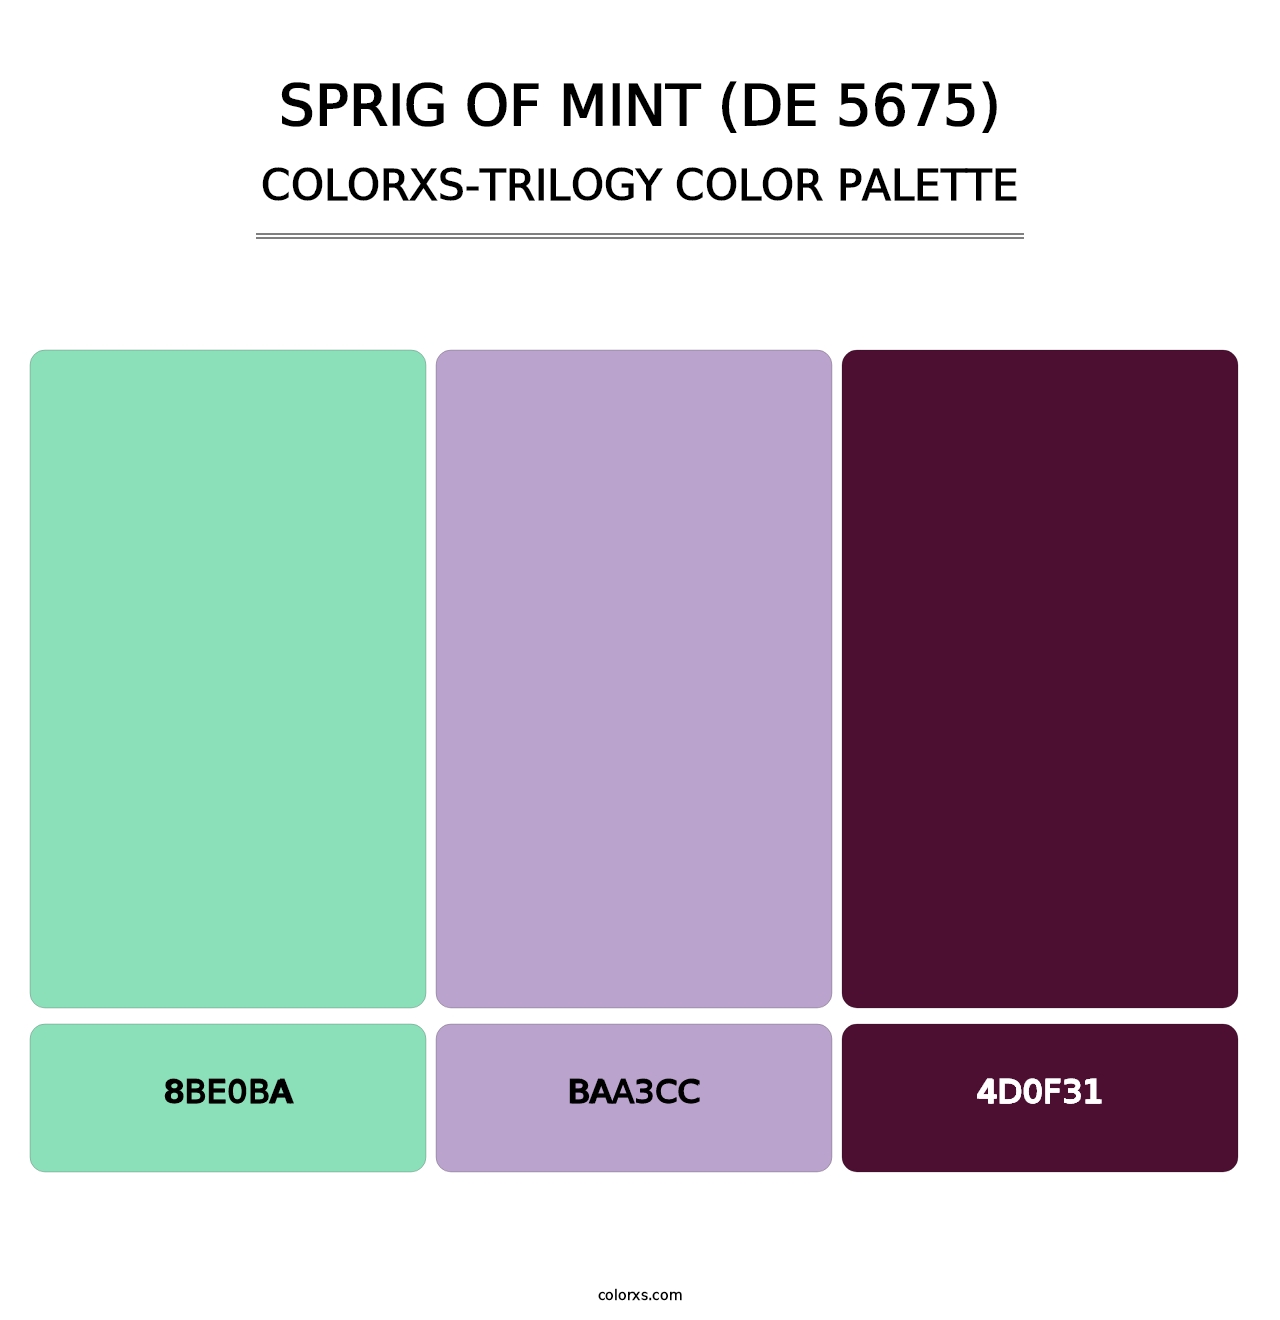 Sprig of Mint (DE 5675) - Colorxs Trilogy Palette